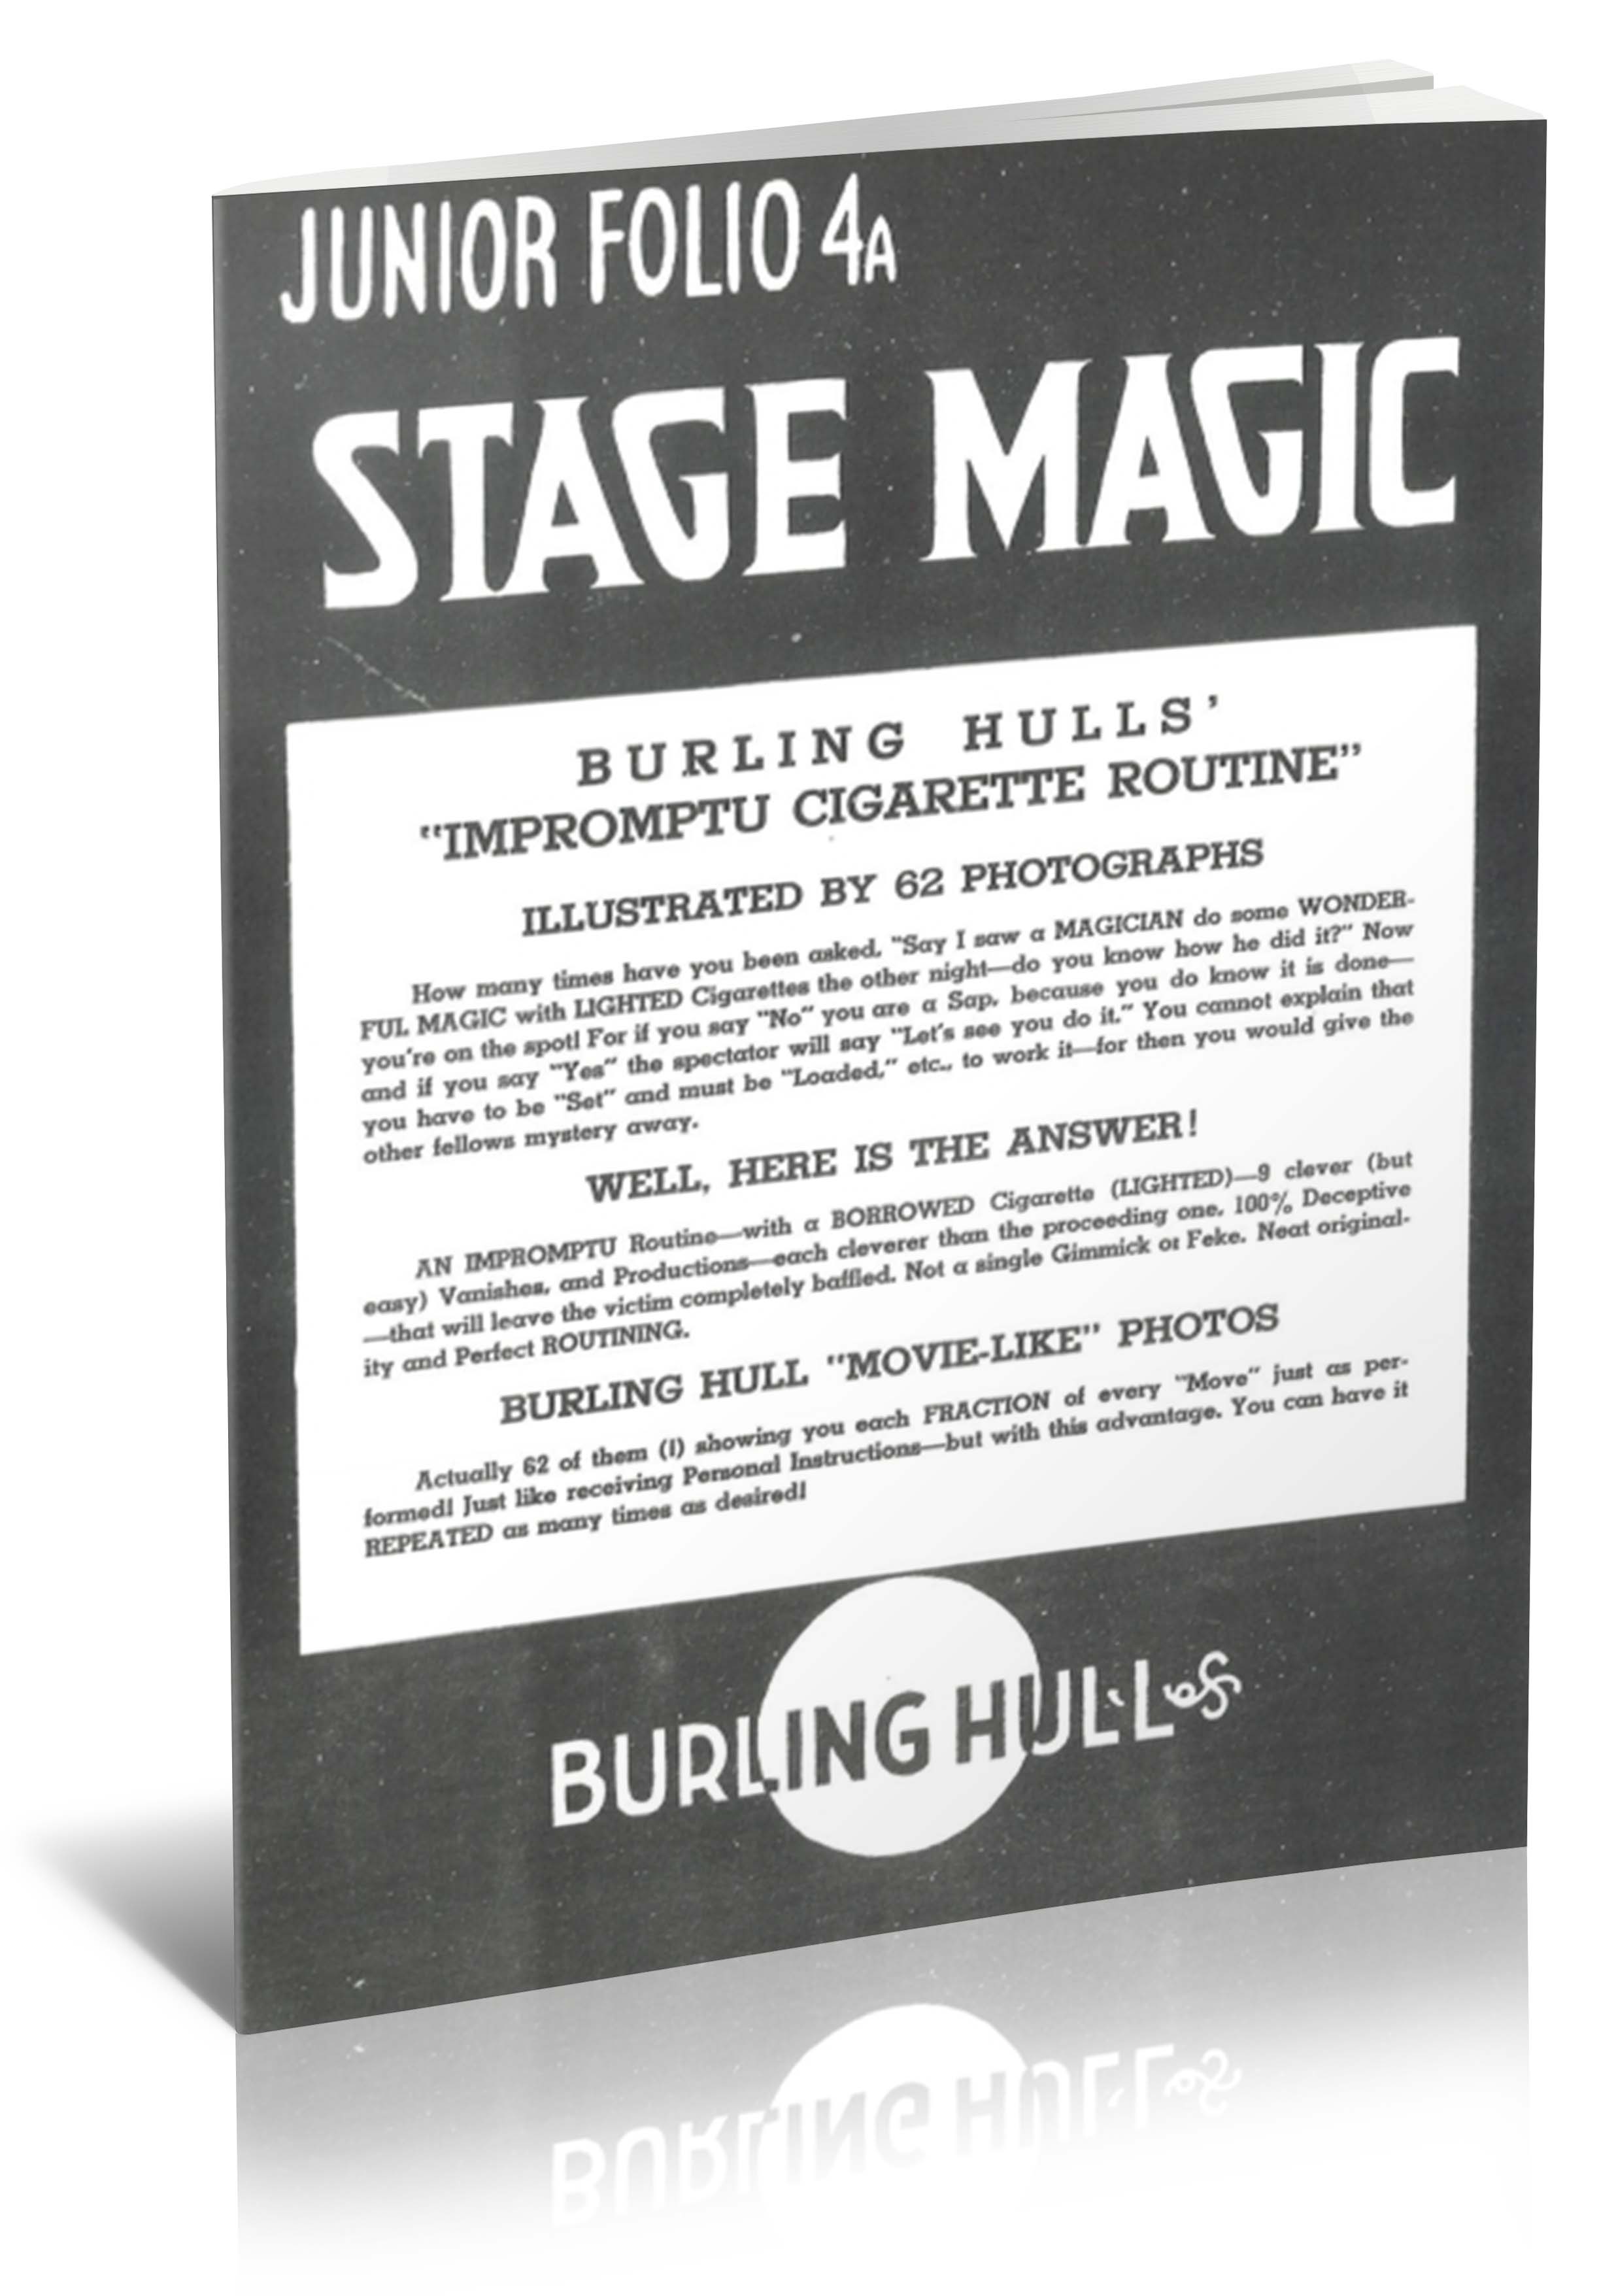 Burling Hull - Impromptu Cigarette Routine (1950 ca)